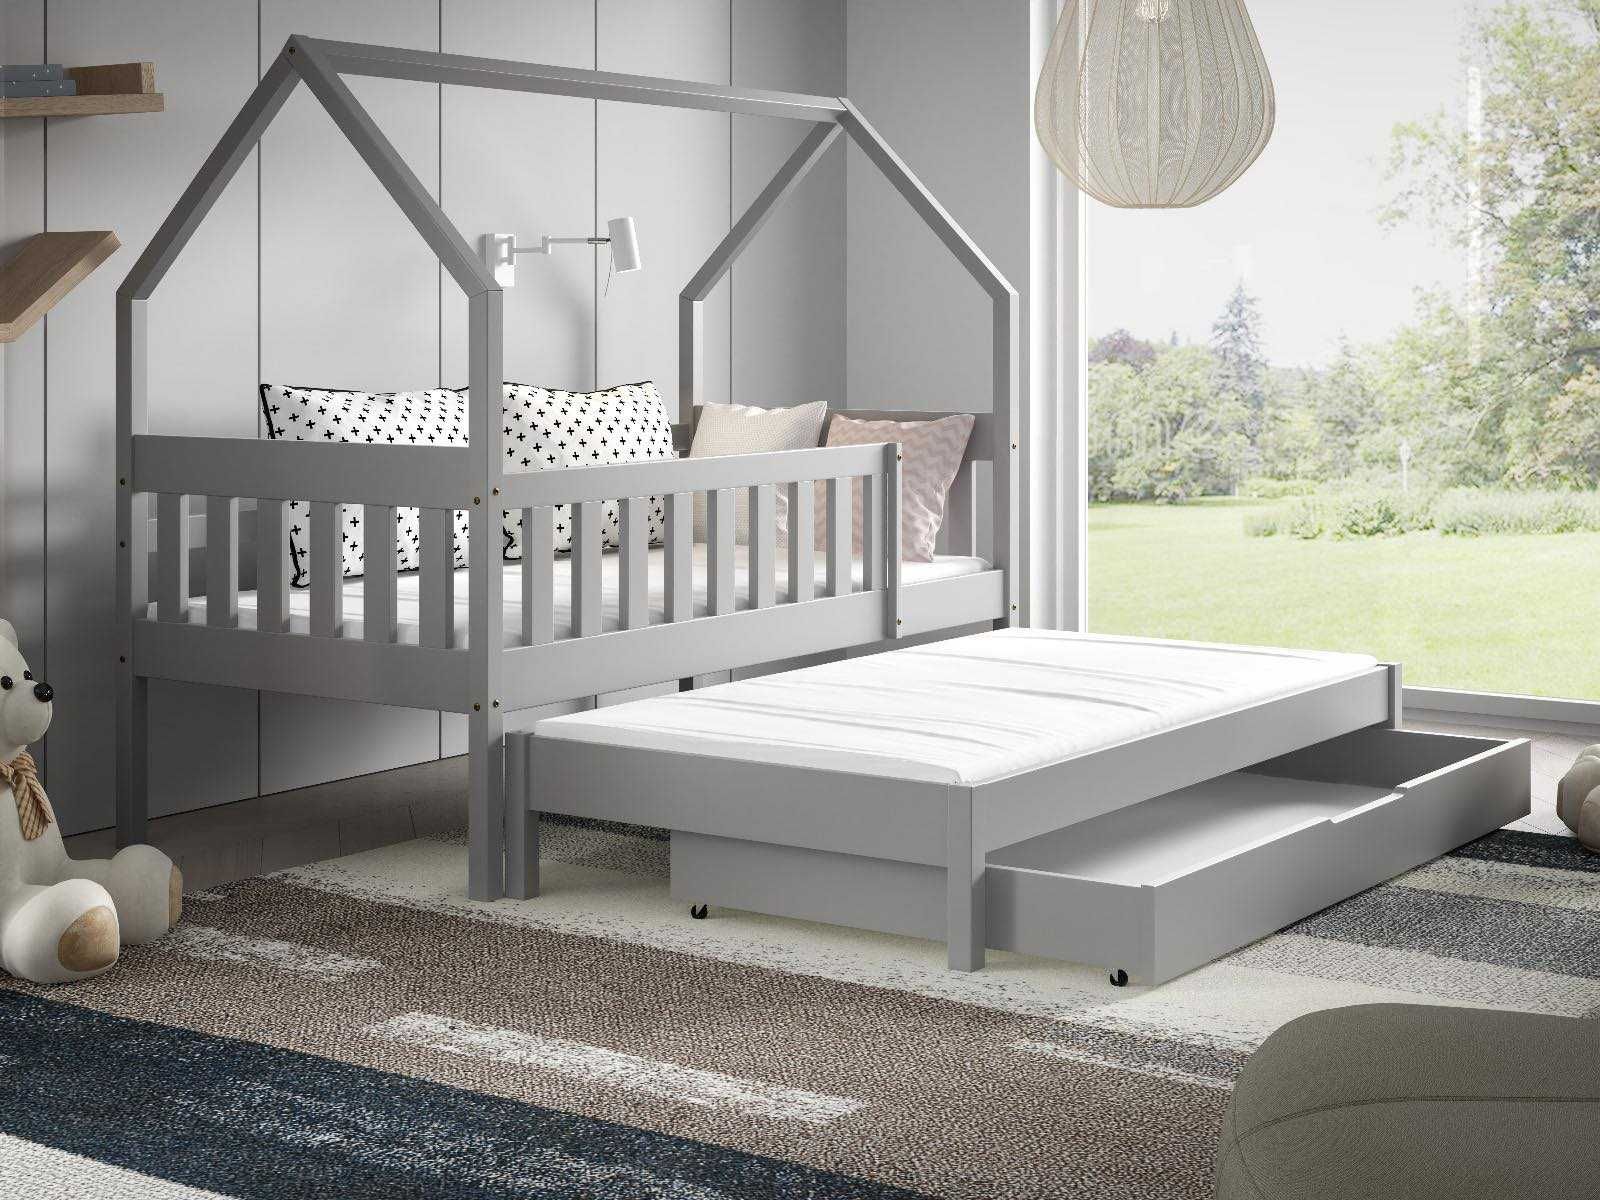 Łóżko dla 2 dzieci DOMEK LUNA 160x80 - materace gratis